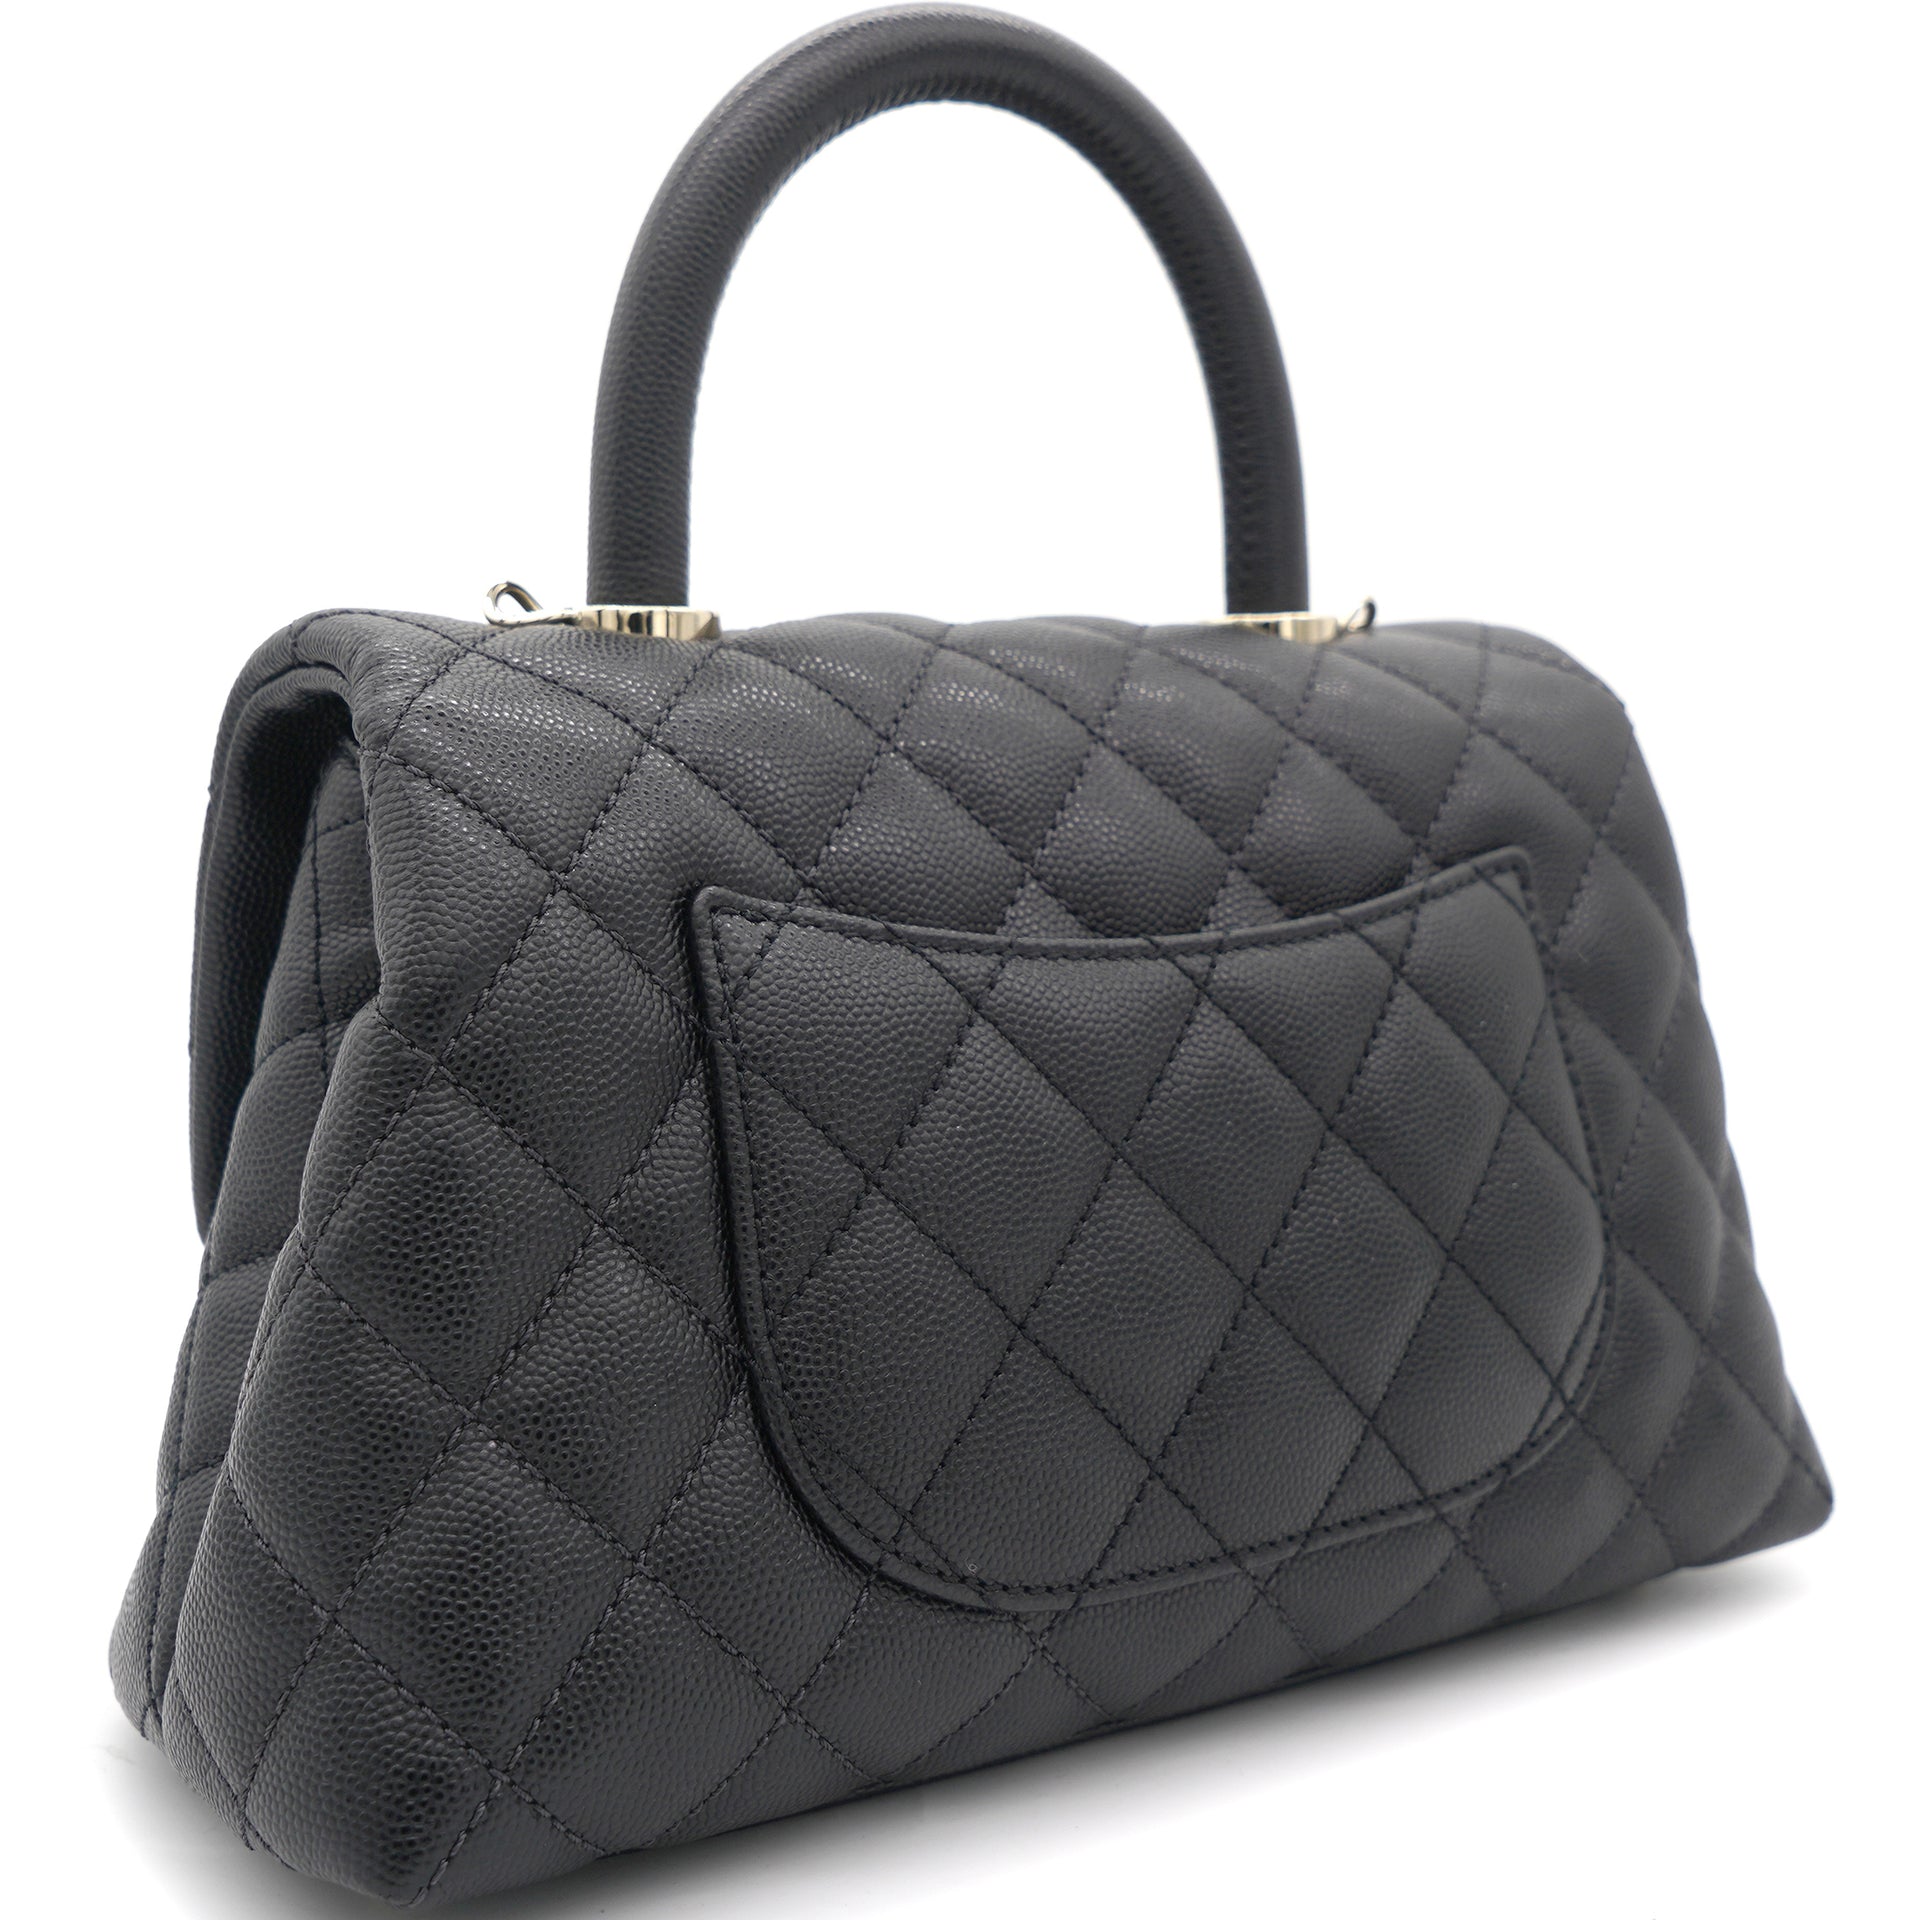 Dhgate Chanel bag  Chanel bag, Bags, Chanel